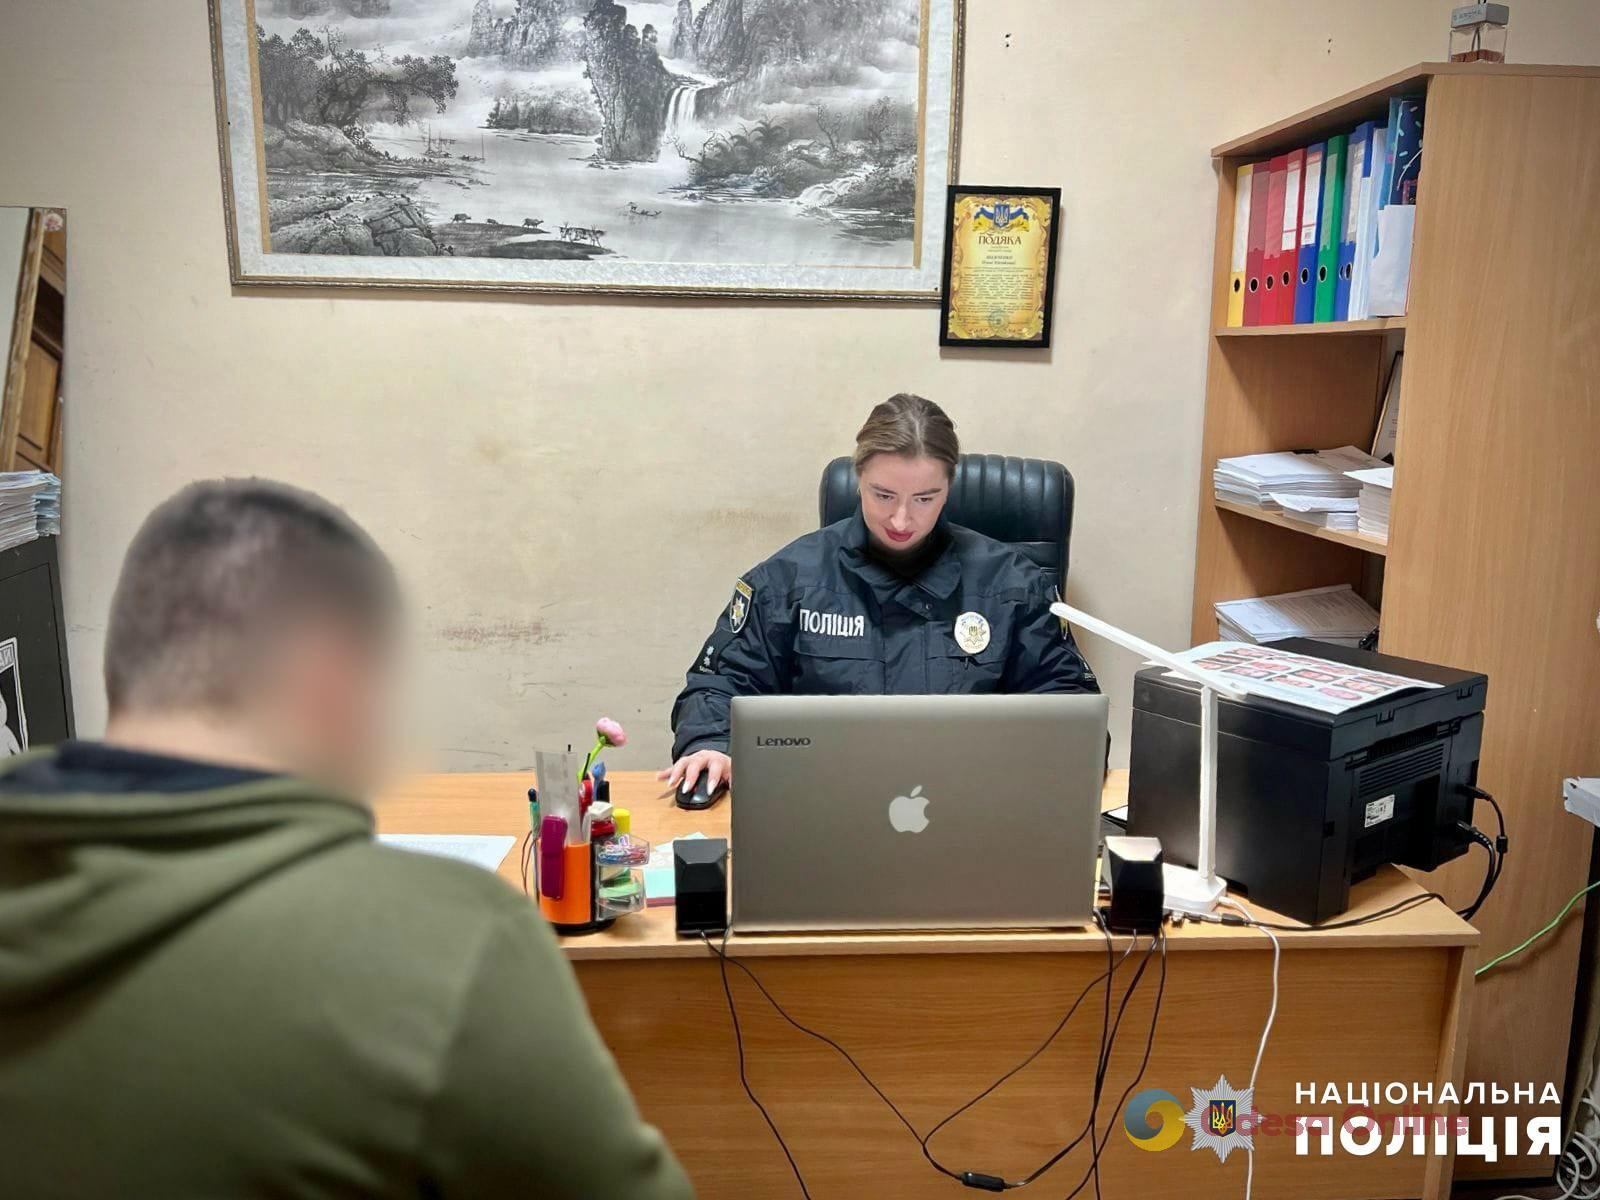 В Одессе грабители обвинили подростка в фотографировании военных объектов и отобрали телефон